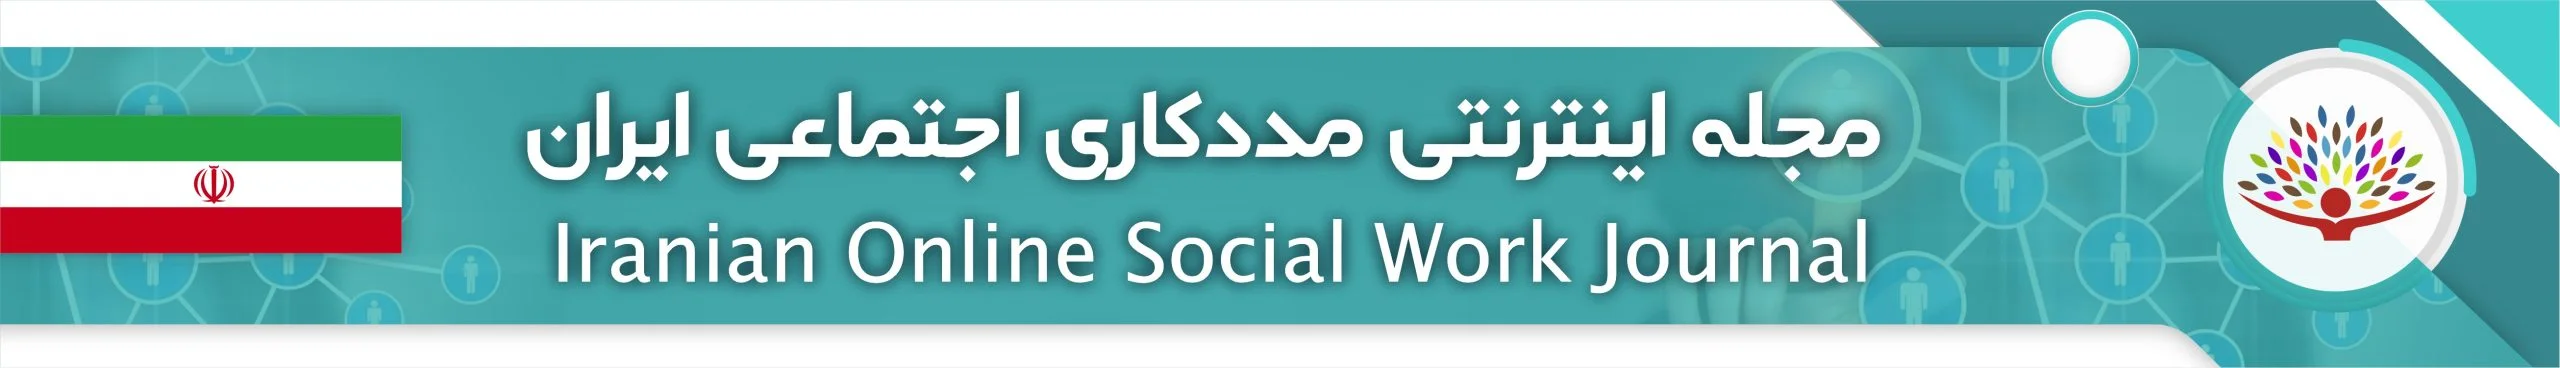 مجله اینترنتی مددکاری اجتماعی ایران